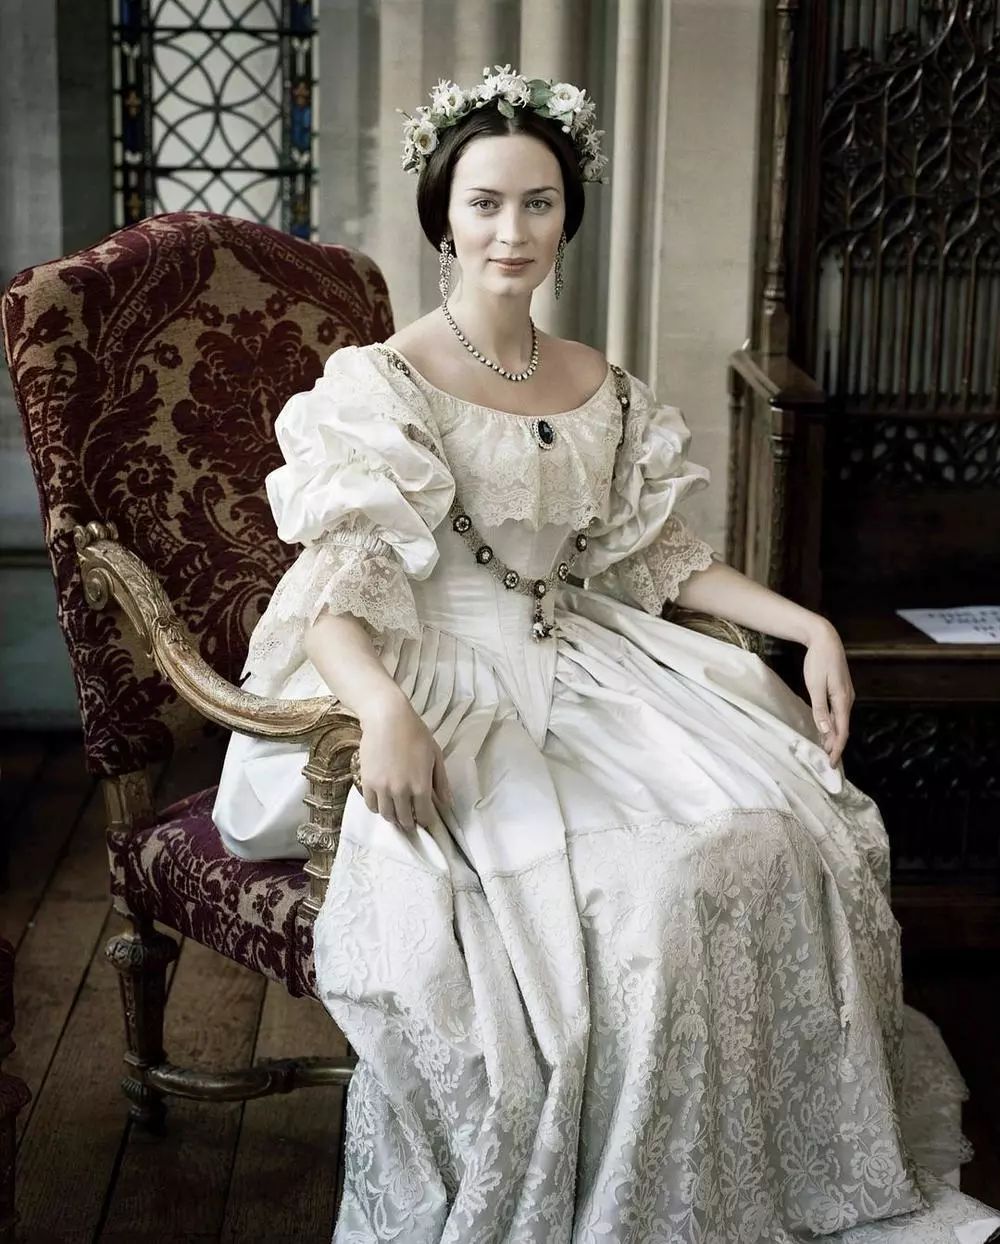 英国传统服装女士图片